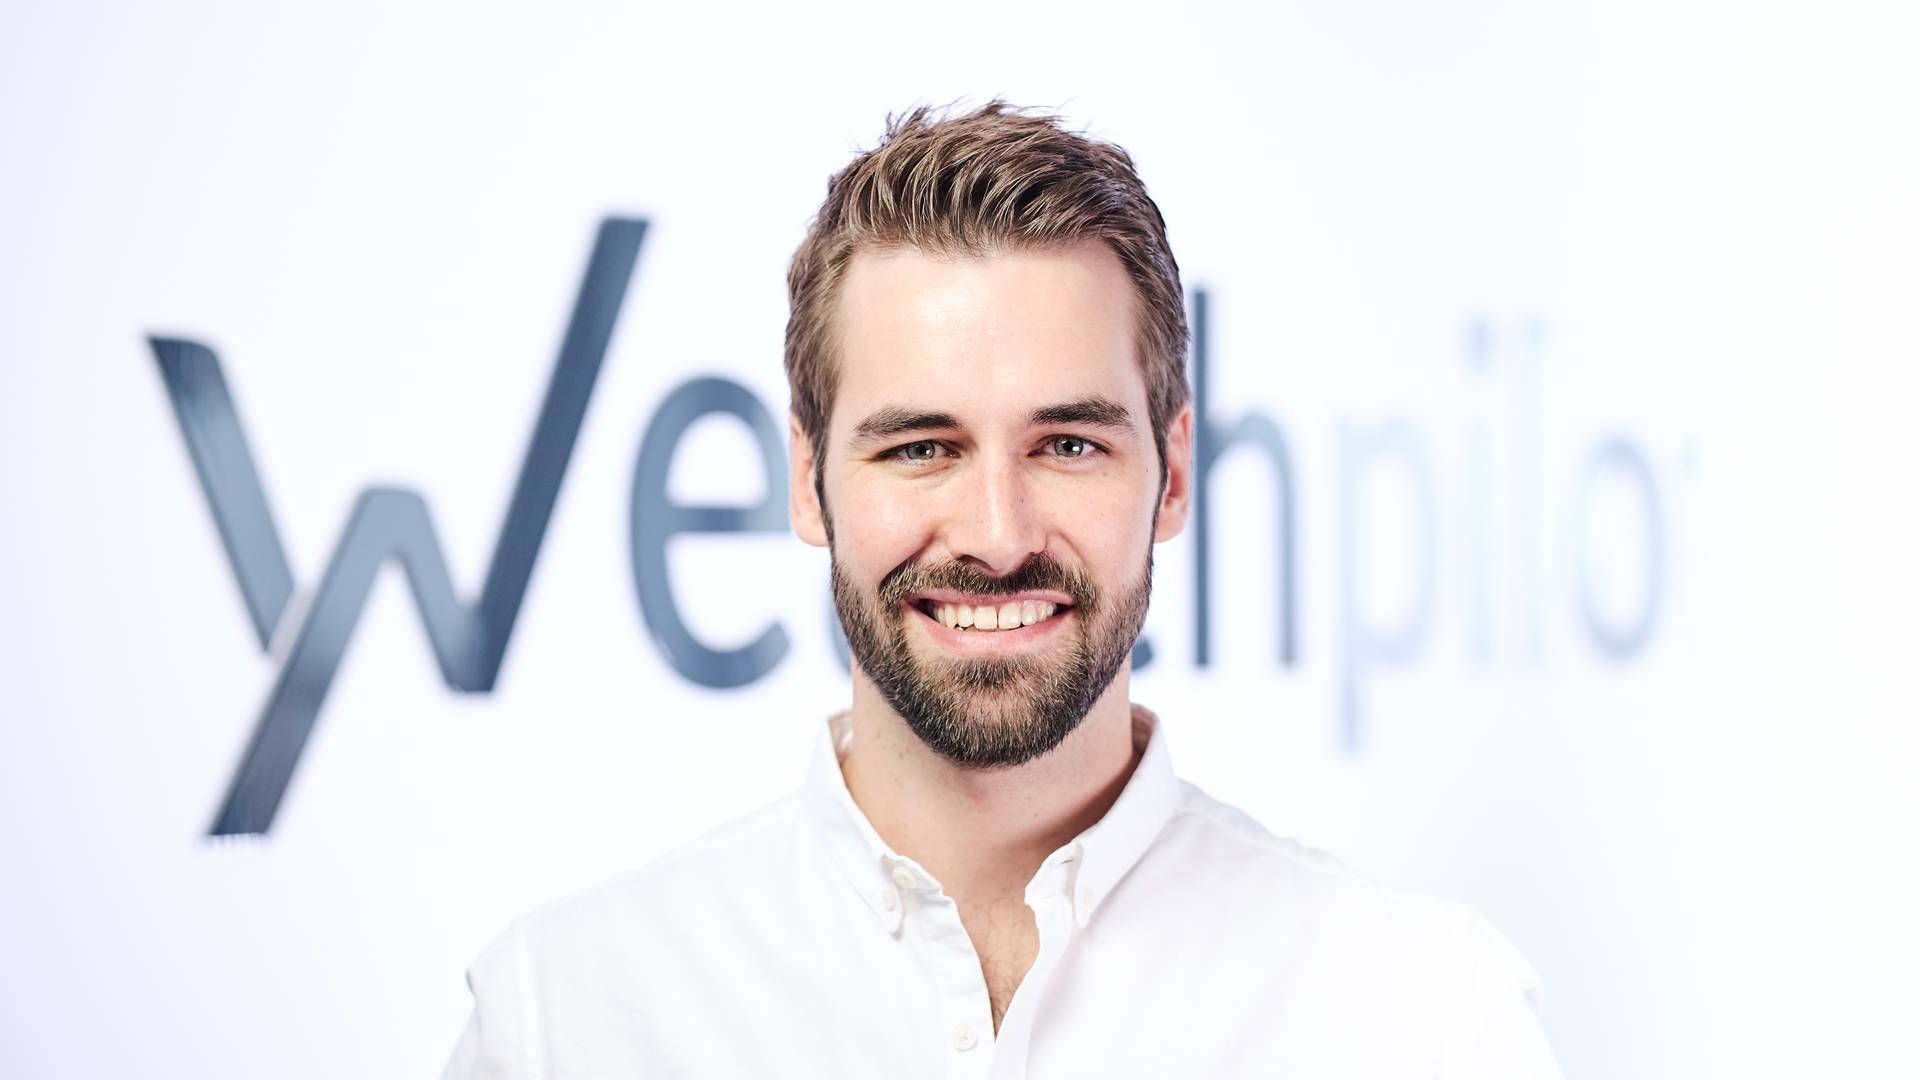 Stefan Schug, Co-Founder und Co-CEO bei Wealthpilot. | Foto: Wealthpilot